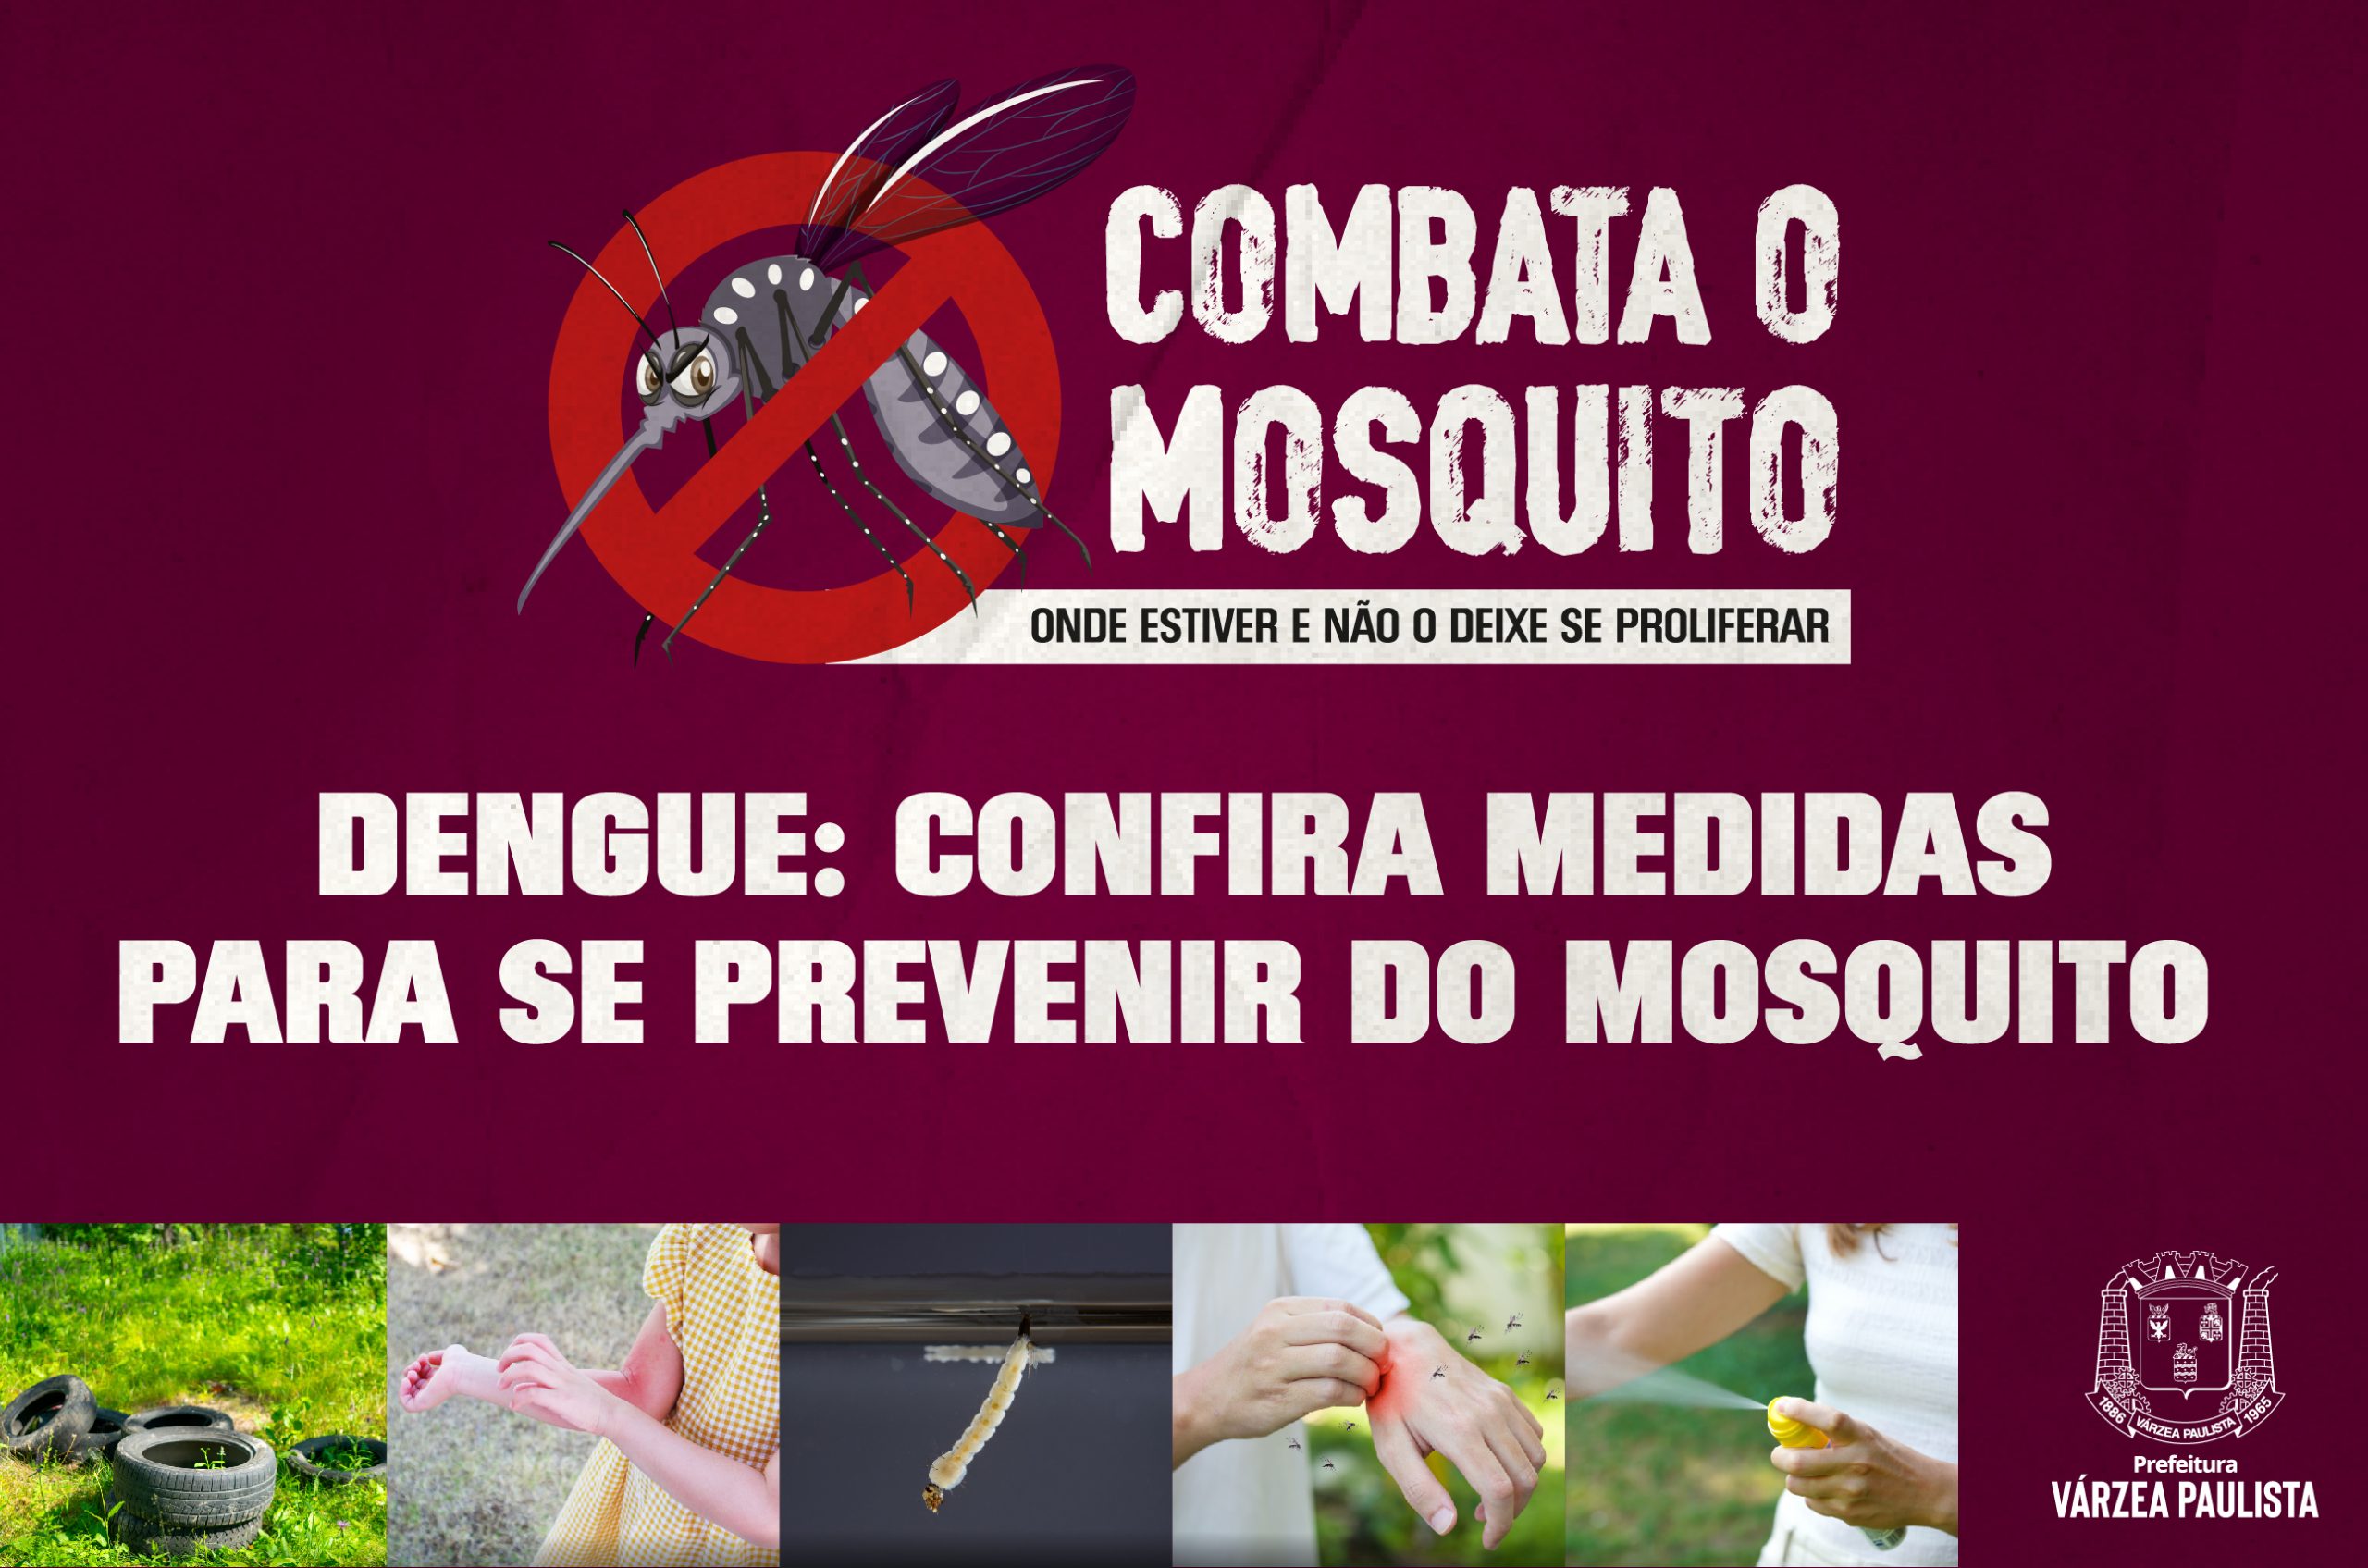 Dengue: confira medidas para se prevenir do mosquito